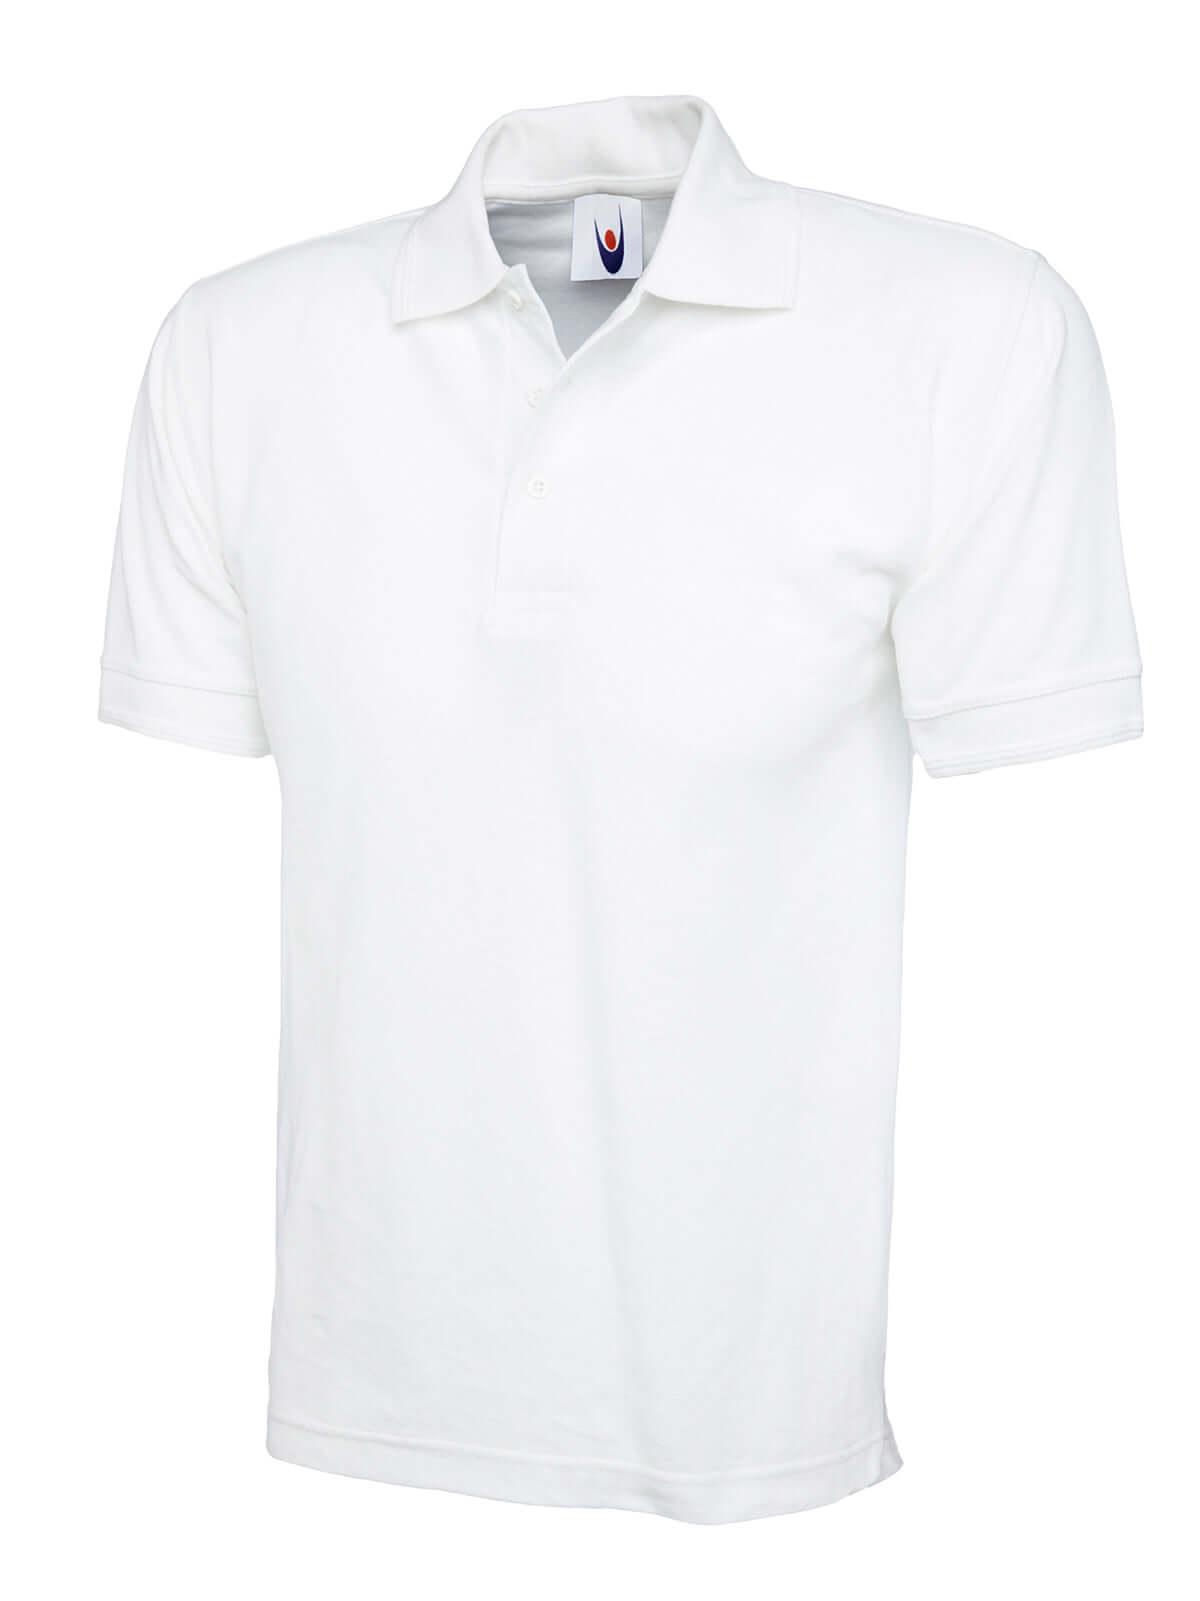 Pegasus Uniform Elite Unisex Cotton Polo Shirt - White